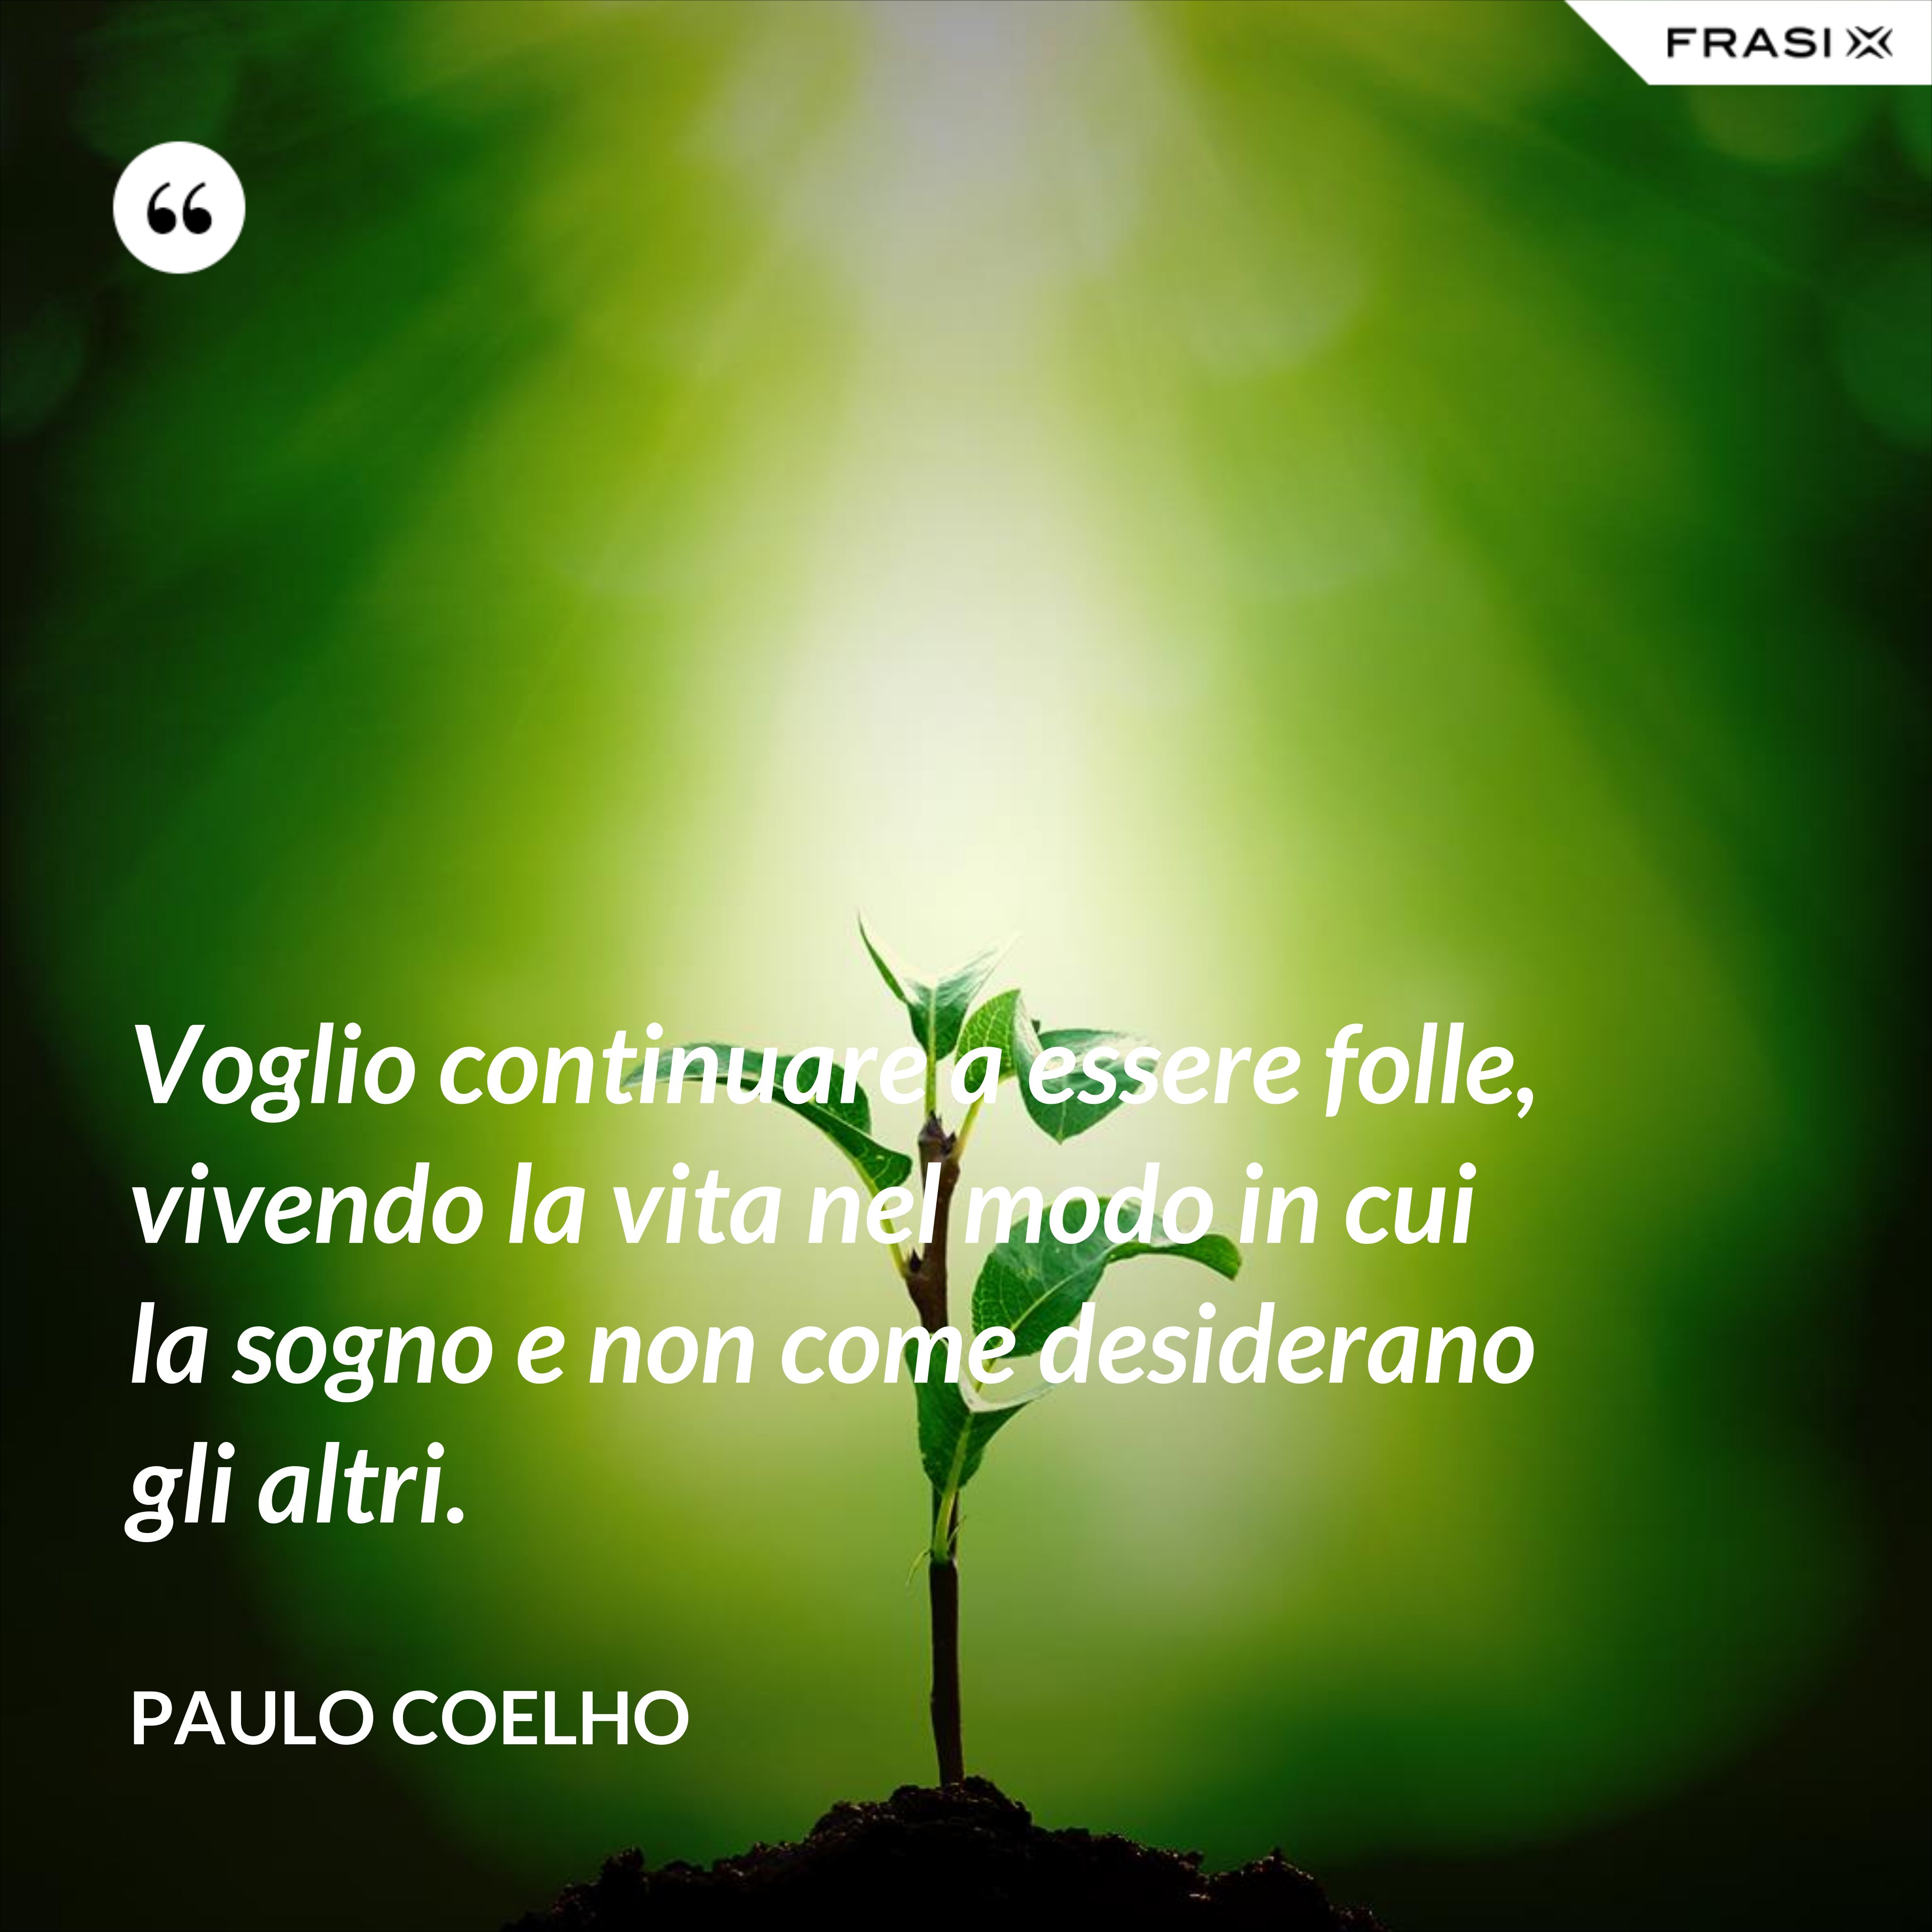 Voglio continuare a essere folle, vivendo la vita nel modo in cui la sogno e non come desiderano gli altri. - Paulo Coelho